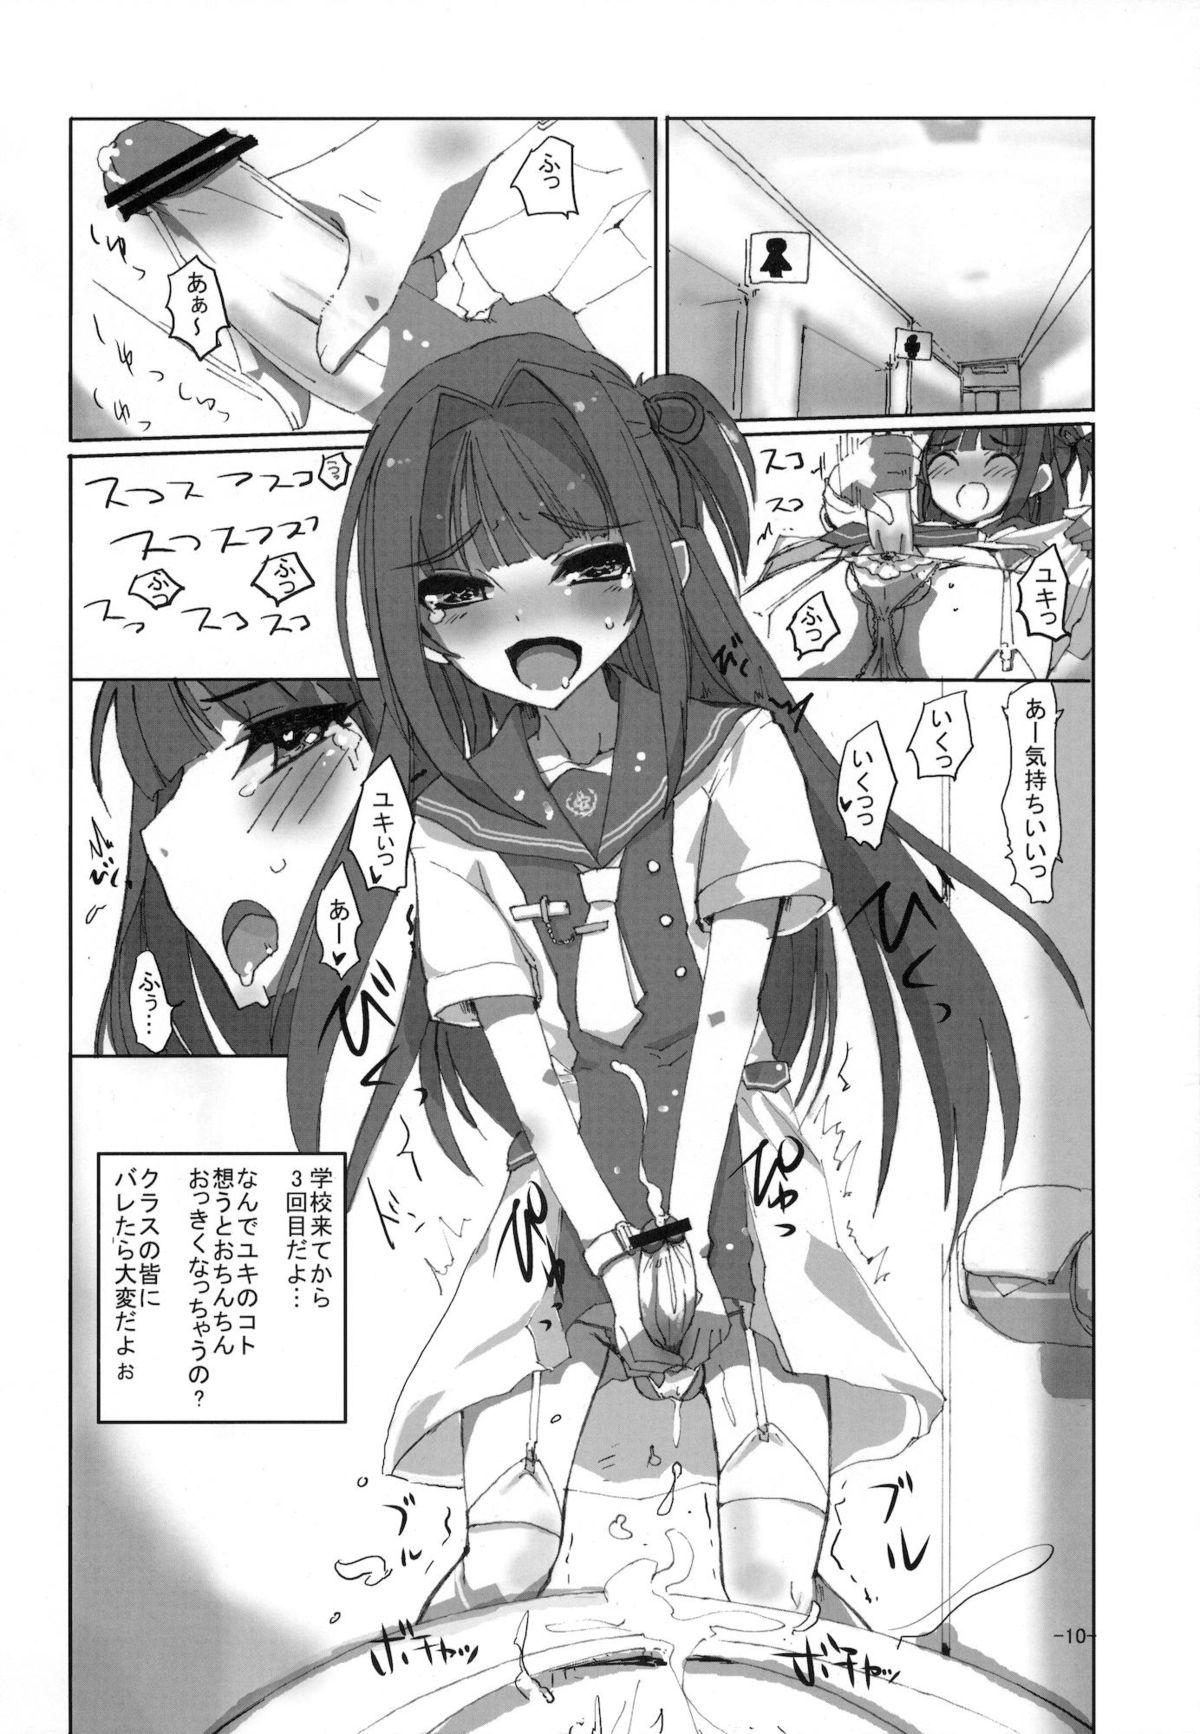 Young Tits Sakurairo Shounen Sabou 6 - Otokonoko wa maid fuku ga osuki Hot Whores - Page 9